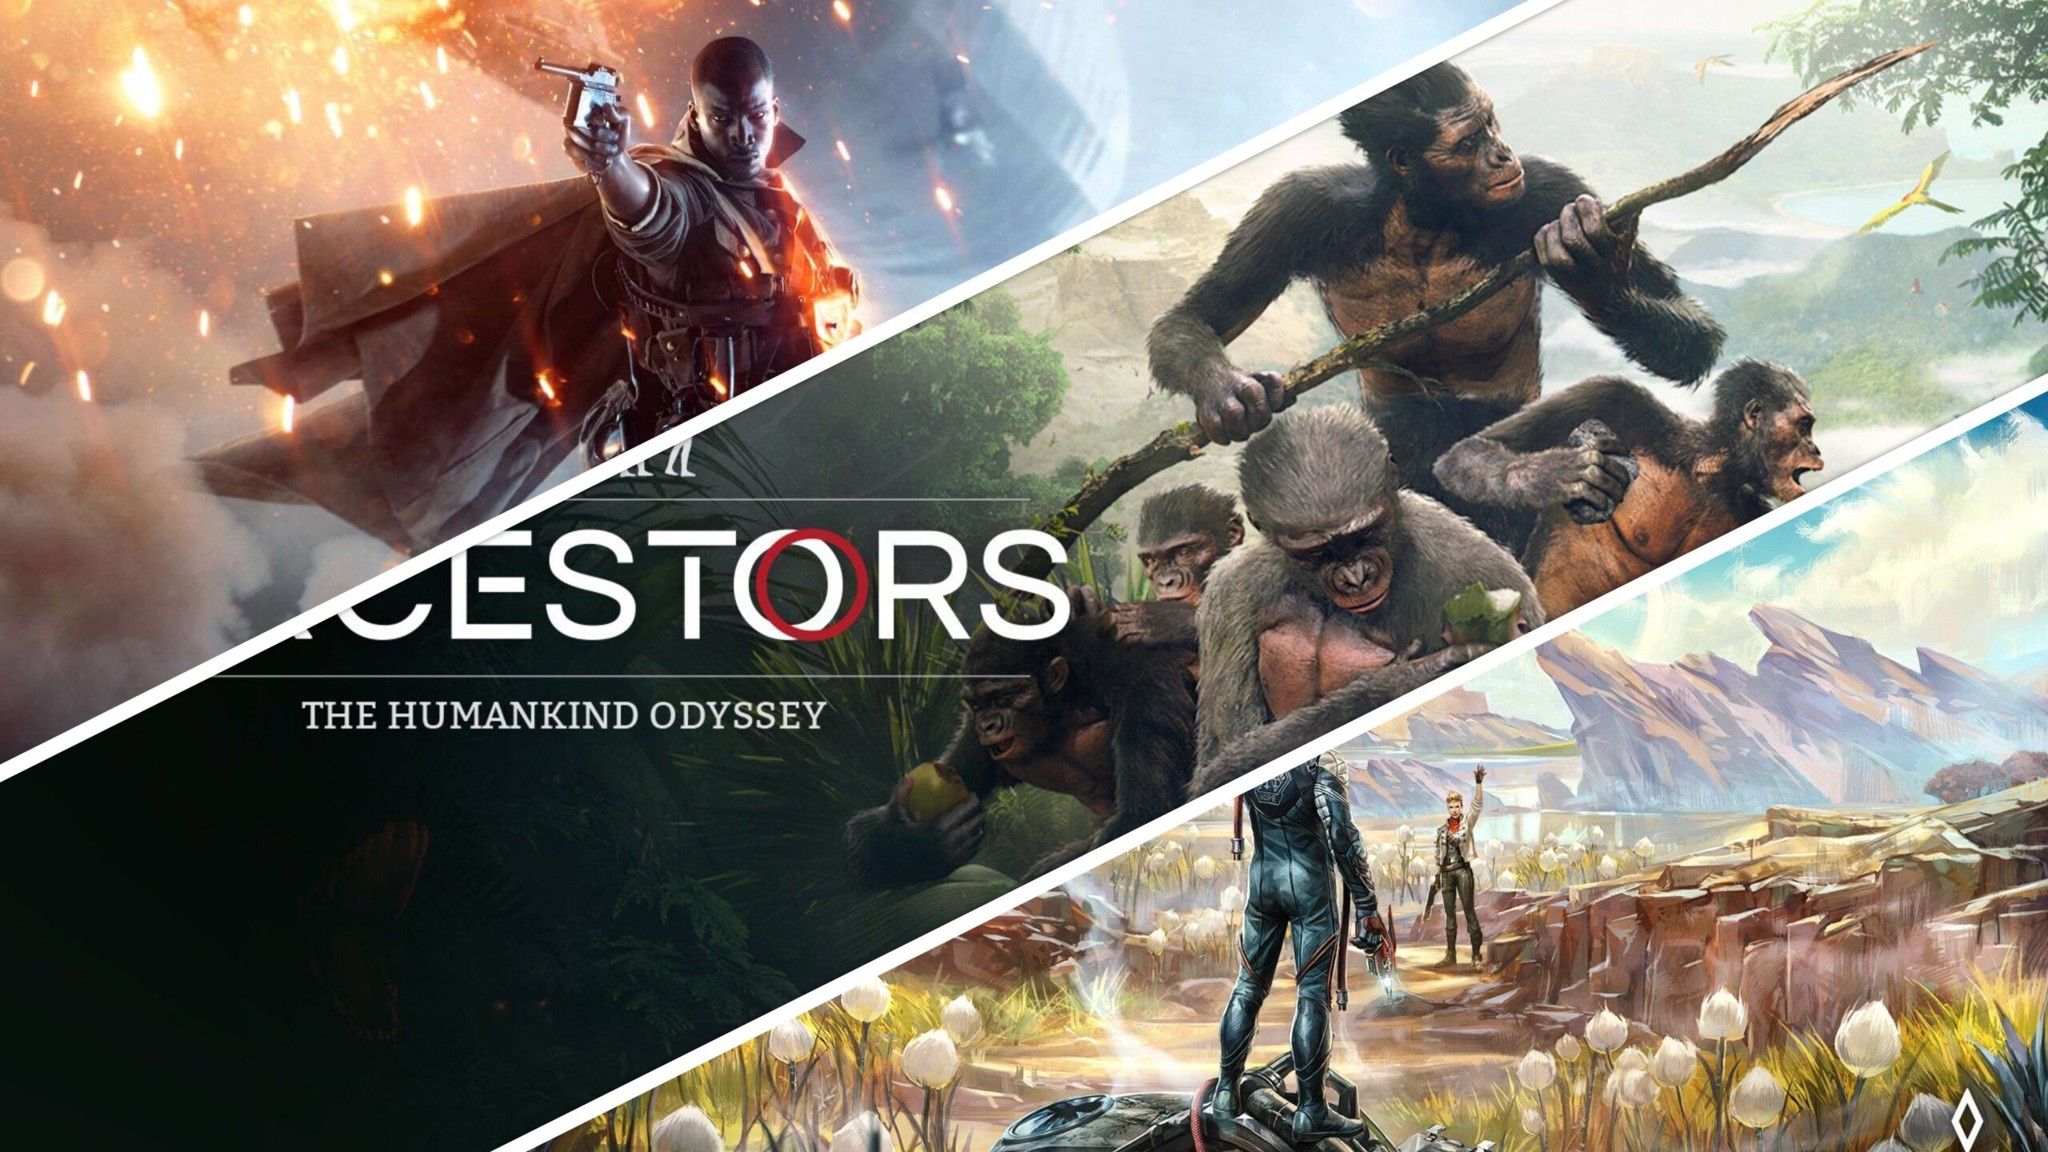 Battlefield 1 và Olympic Games Tokyo 2020 đang miễn phí cùng Ancestors: The Humankind Odyssey giảm giá trên Steam